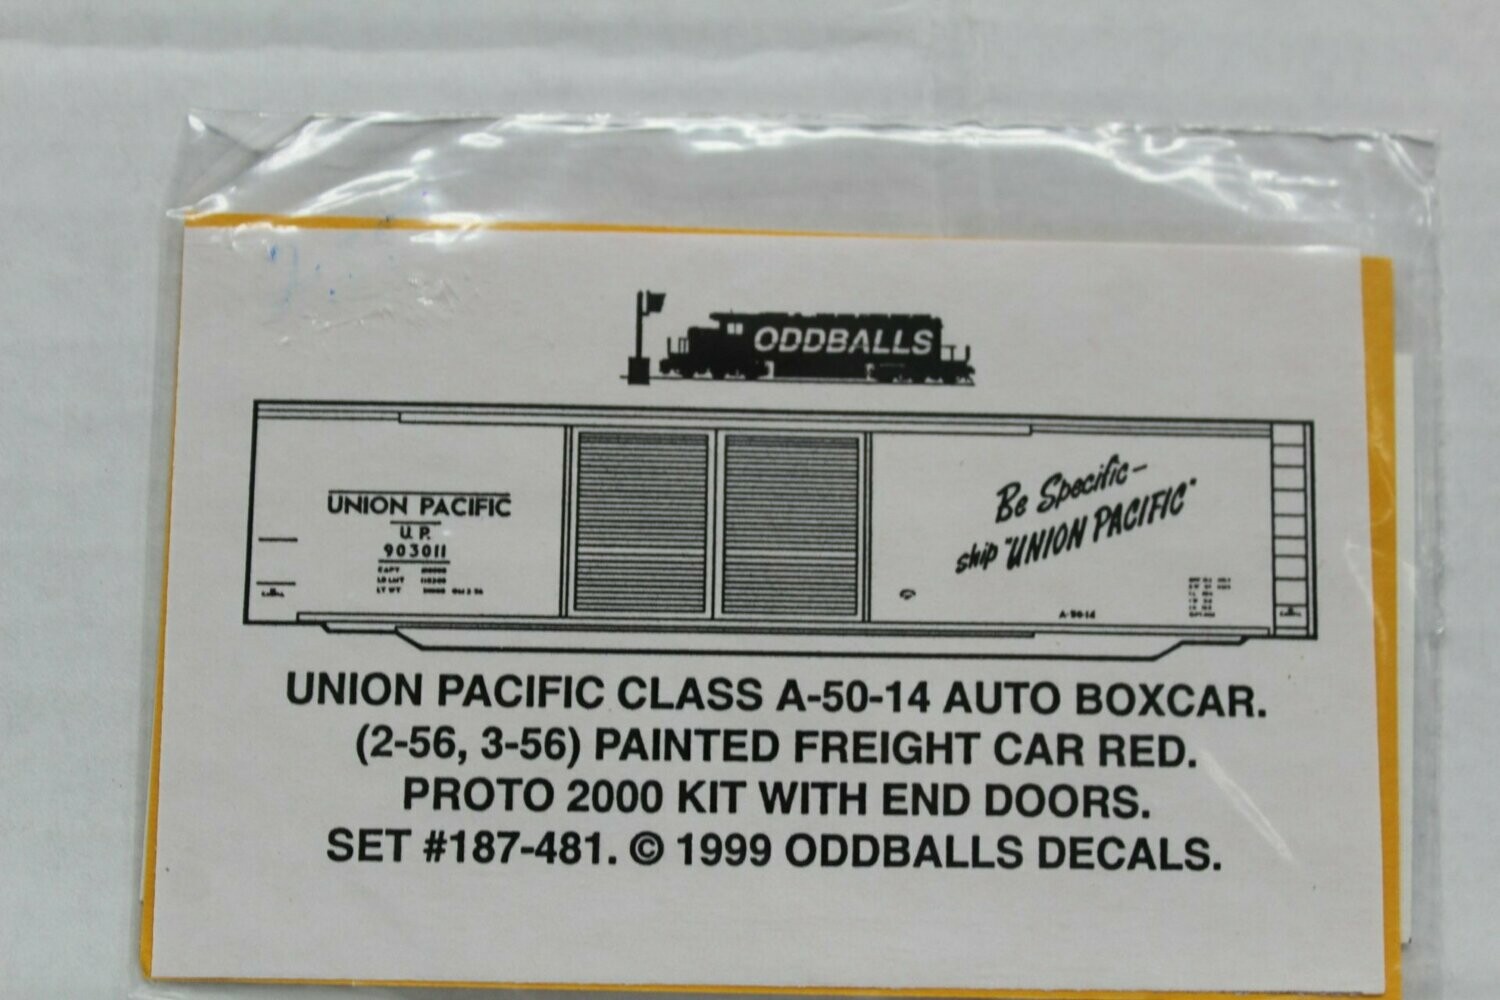 Union Pacific A-50-14 Auto Boxcar (1956) Decal set ODDBALLS